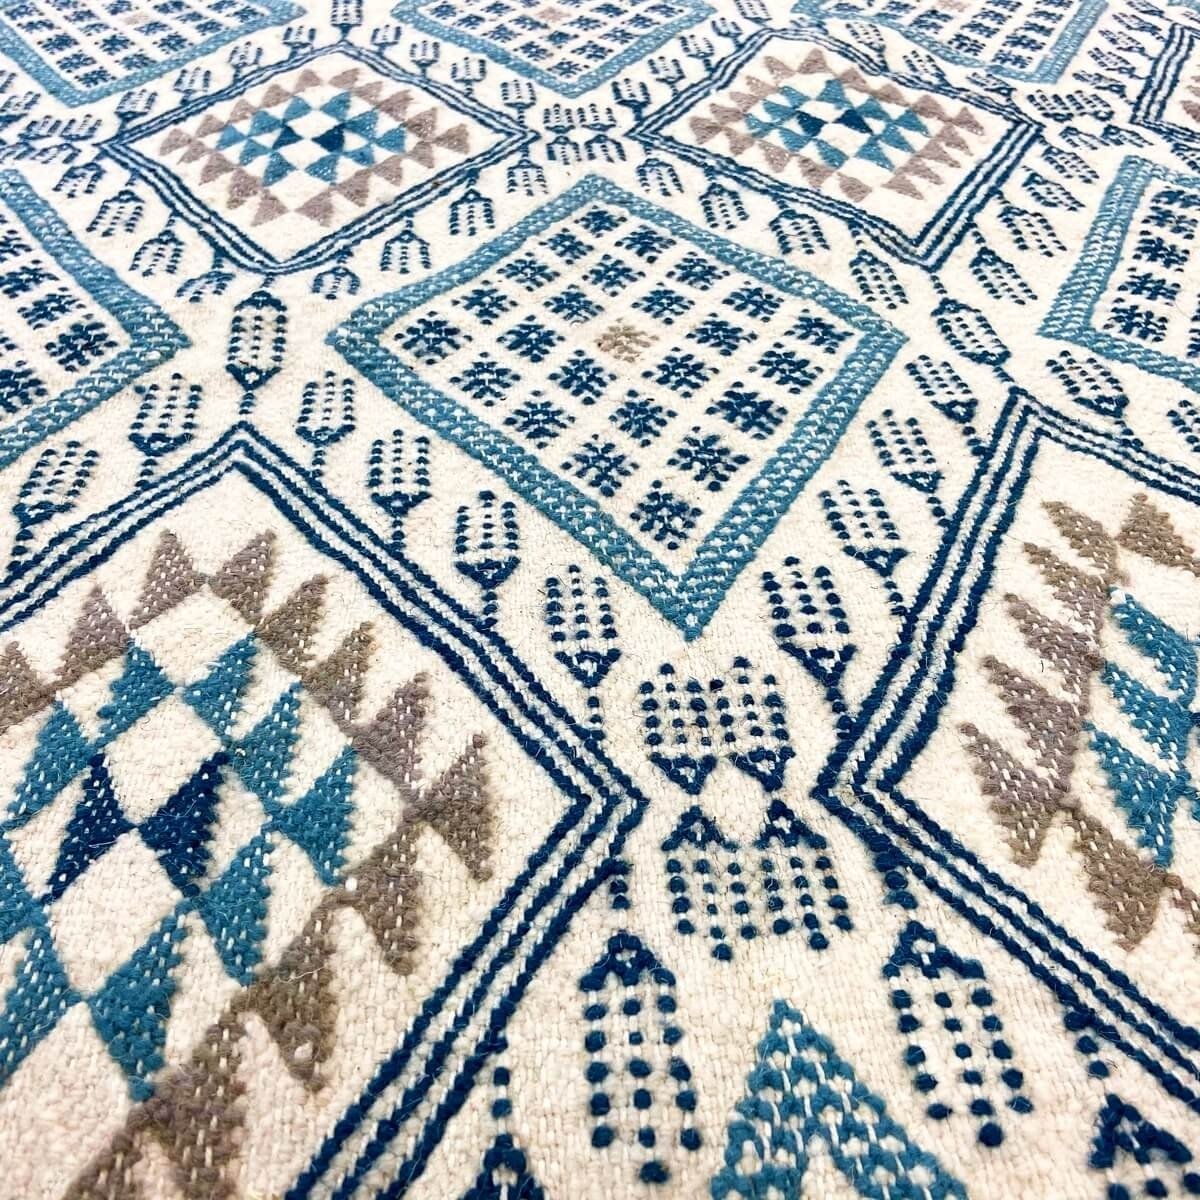 Berber tapijt Tapijt Margoum Louz 171x252 Wit/Blauw (Handgeweven, Wol, Tunesië) Tunesisch Margoum Tapijt uit de stad Kairouan. R